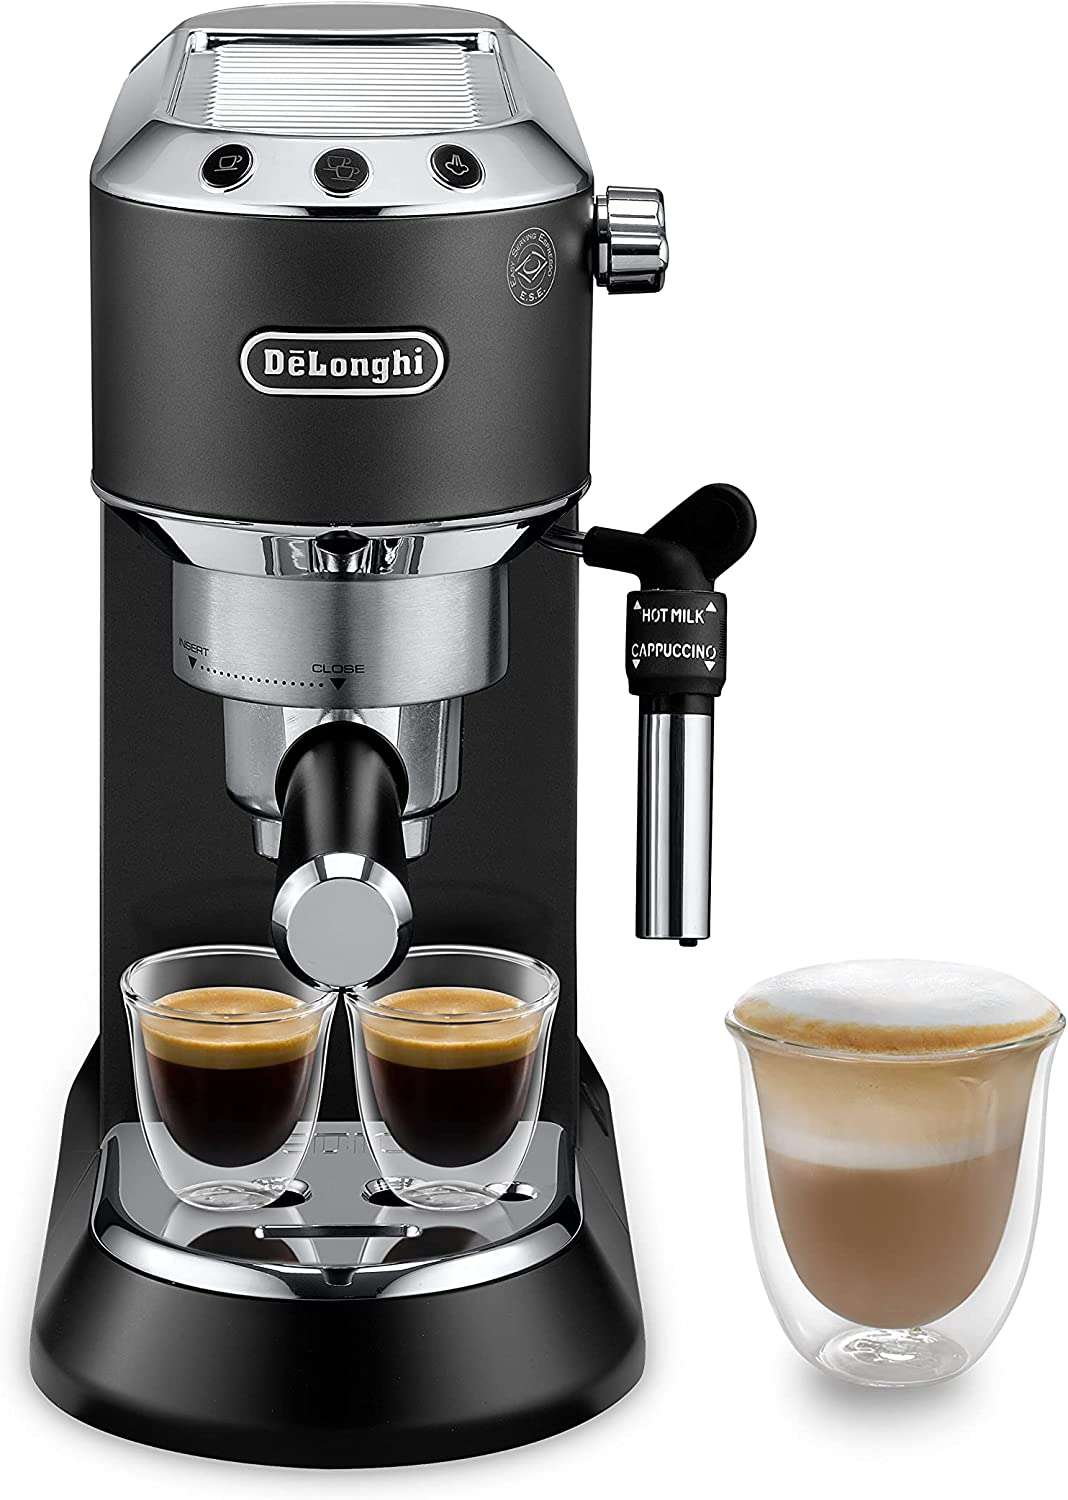 Vente Flash de Printemps : les 10 meilleures offres de machines à café © Amazon